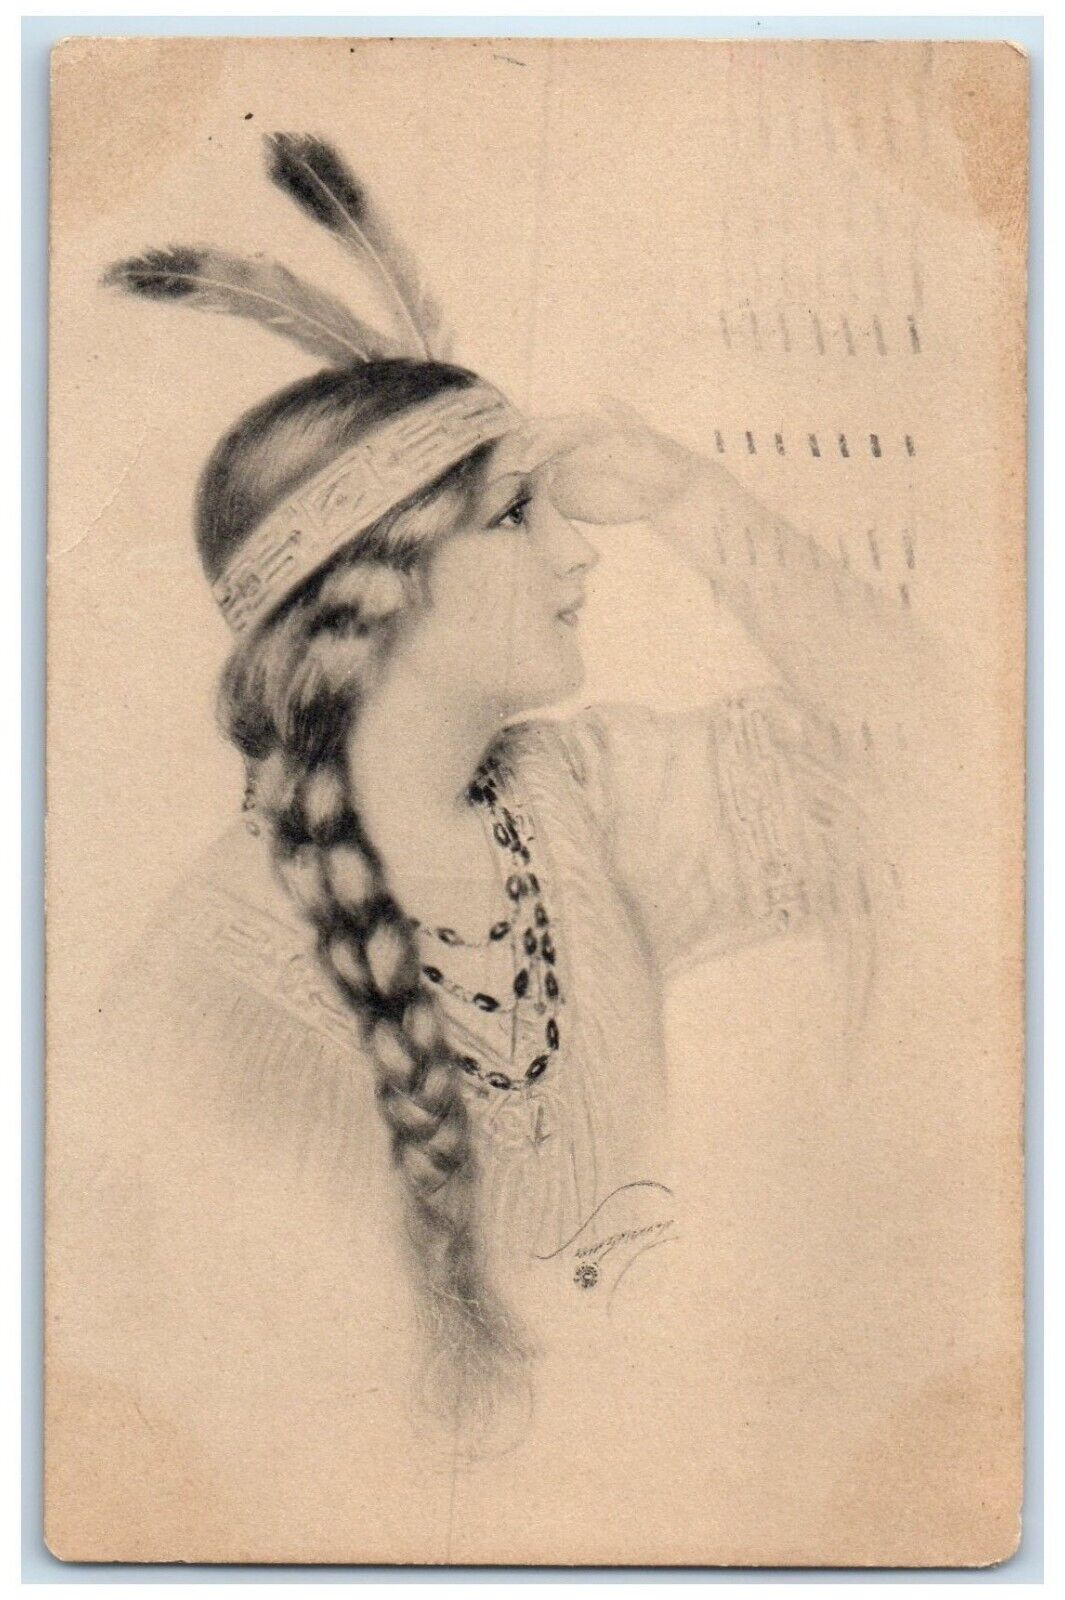 1914 Pretty Woman Feather Braided Hair Brooklyn NY Native American Postcard